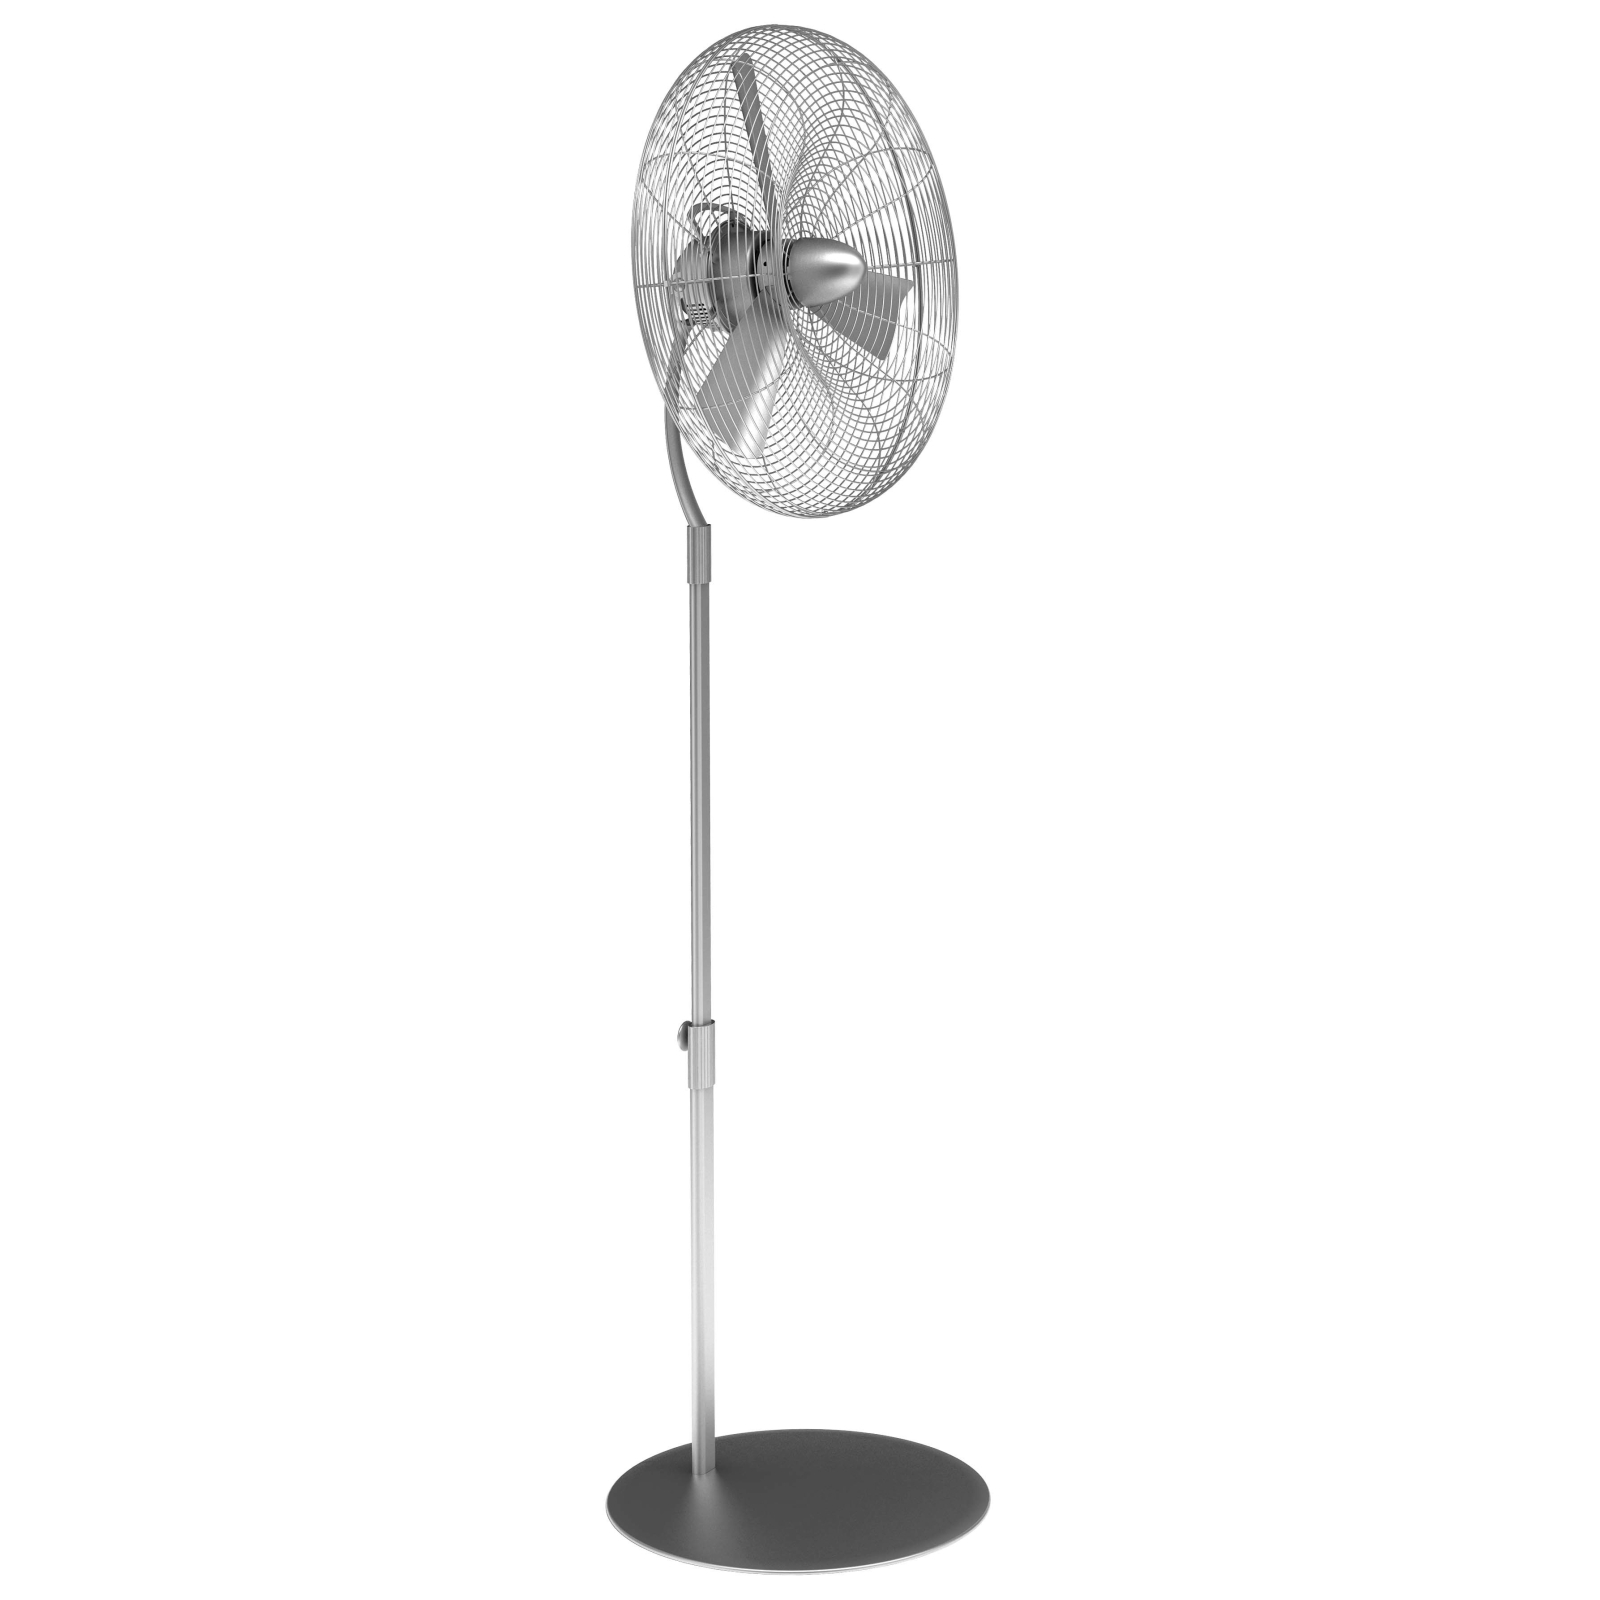 Вентилятор Stadler form Charly Fan Stand C-015